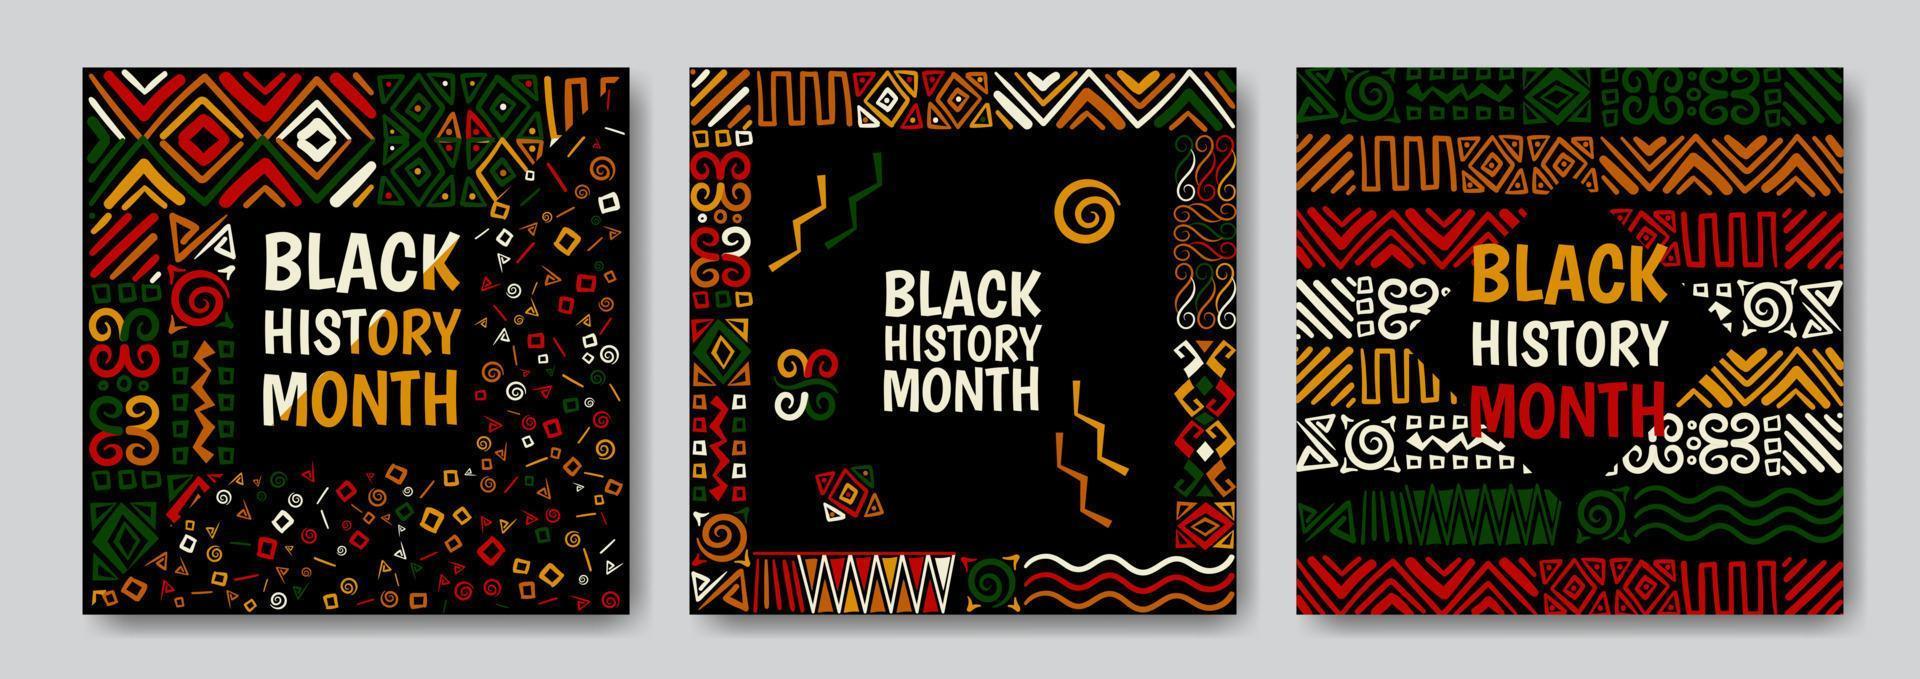 conjunto de fundos abstratos do mês da história negra com padrões vetor